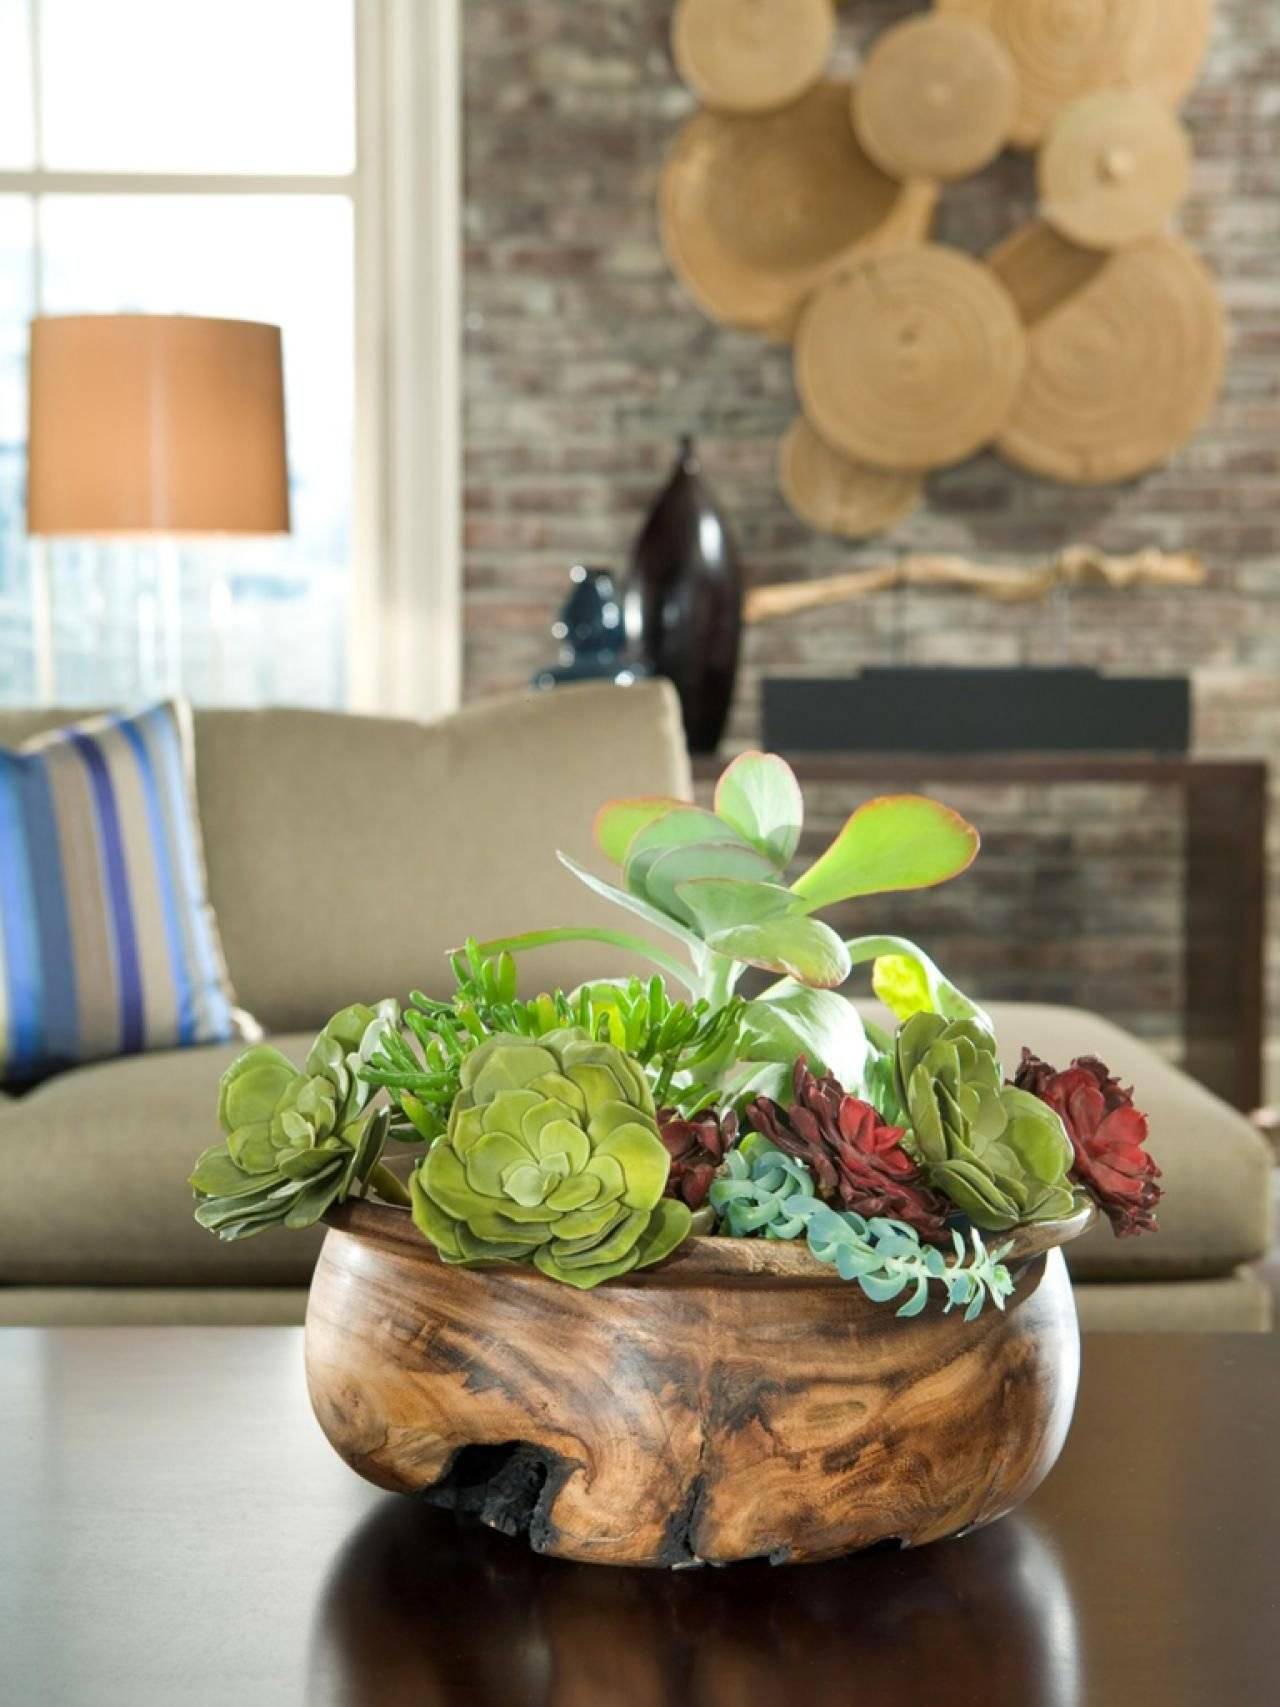 Комнатные растения в интерьере квартиры и жилого дома, декоративные искусственные растения для интерьера